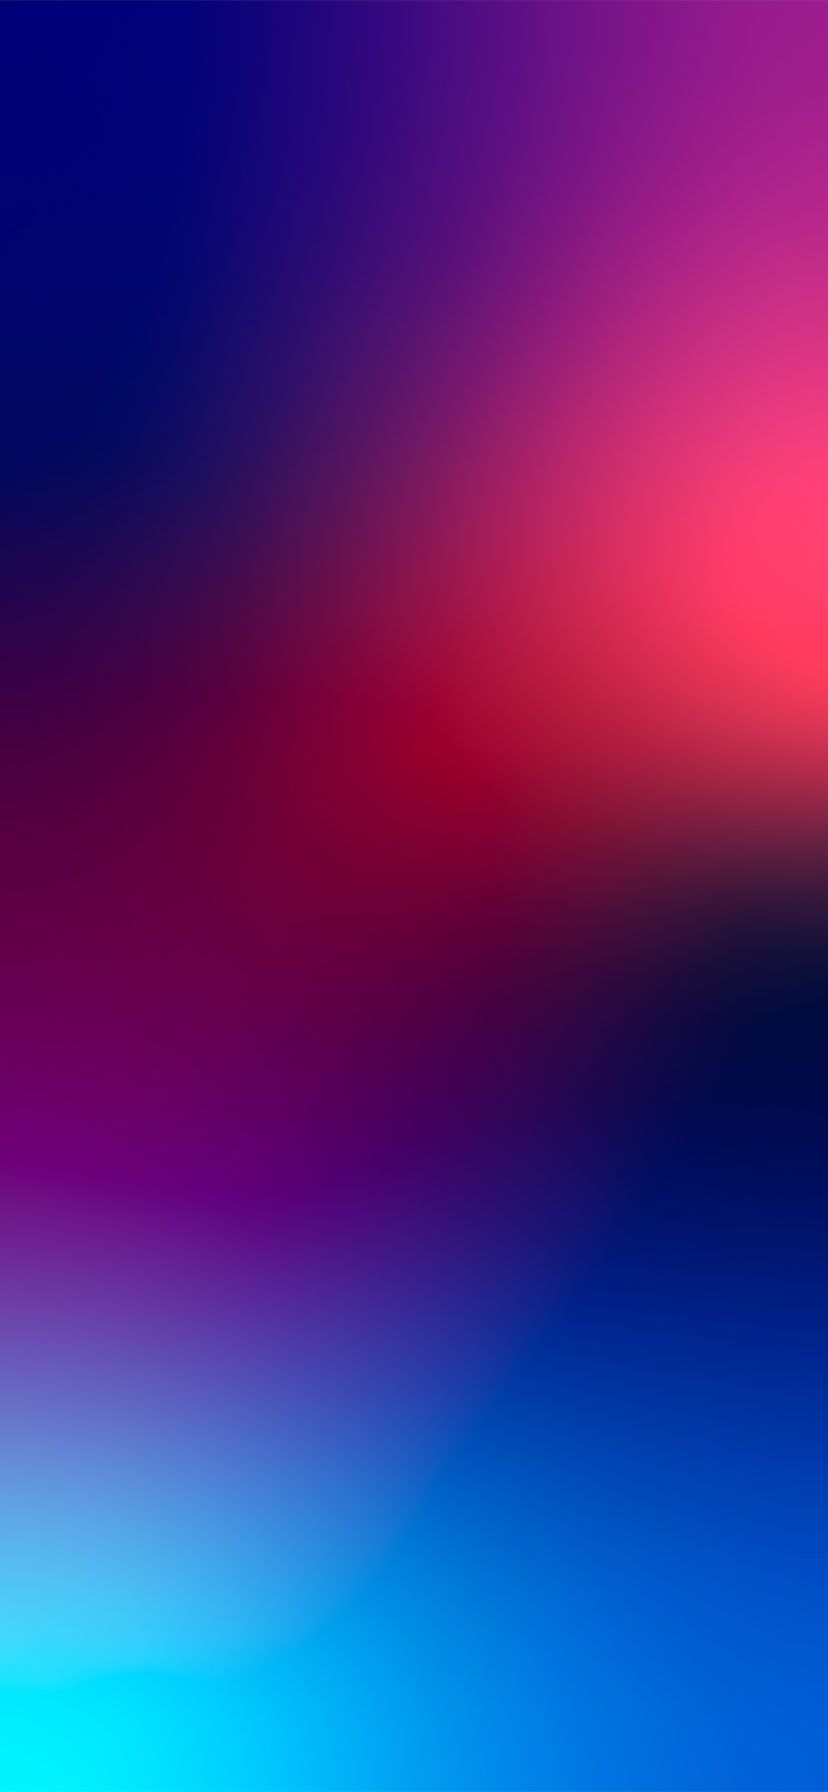 Hình nền iPhone Gradient màu tím đậm: Màu tím đậm là một sự kết hợp tuyệt vời giữa màu sắc và sự tươi mới. Nếu bạn đang tìm kiếm một hình nền iPhone gradient màu tím đậm để làm mới màn hình của mình, hãy xem ảnh liên quan. Đó sẽ là lựa chọn hoàn hảo cho bạn nếu bạn thích màu sắc và sự khác biệt.